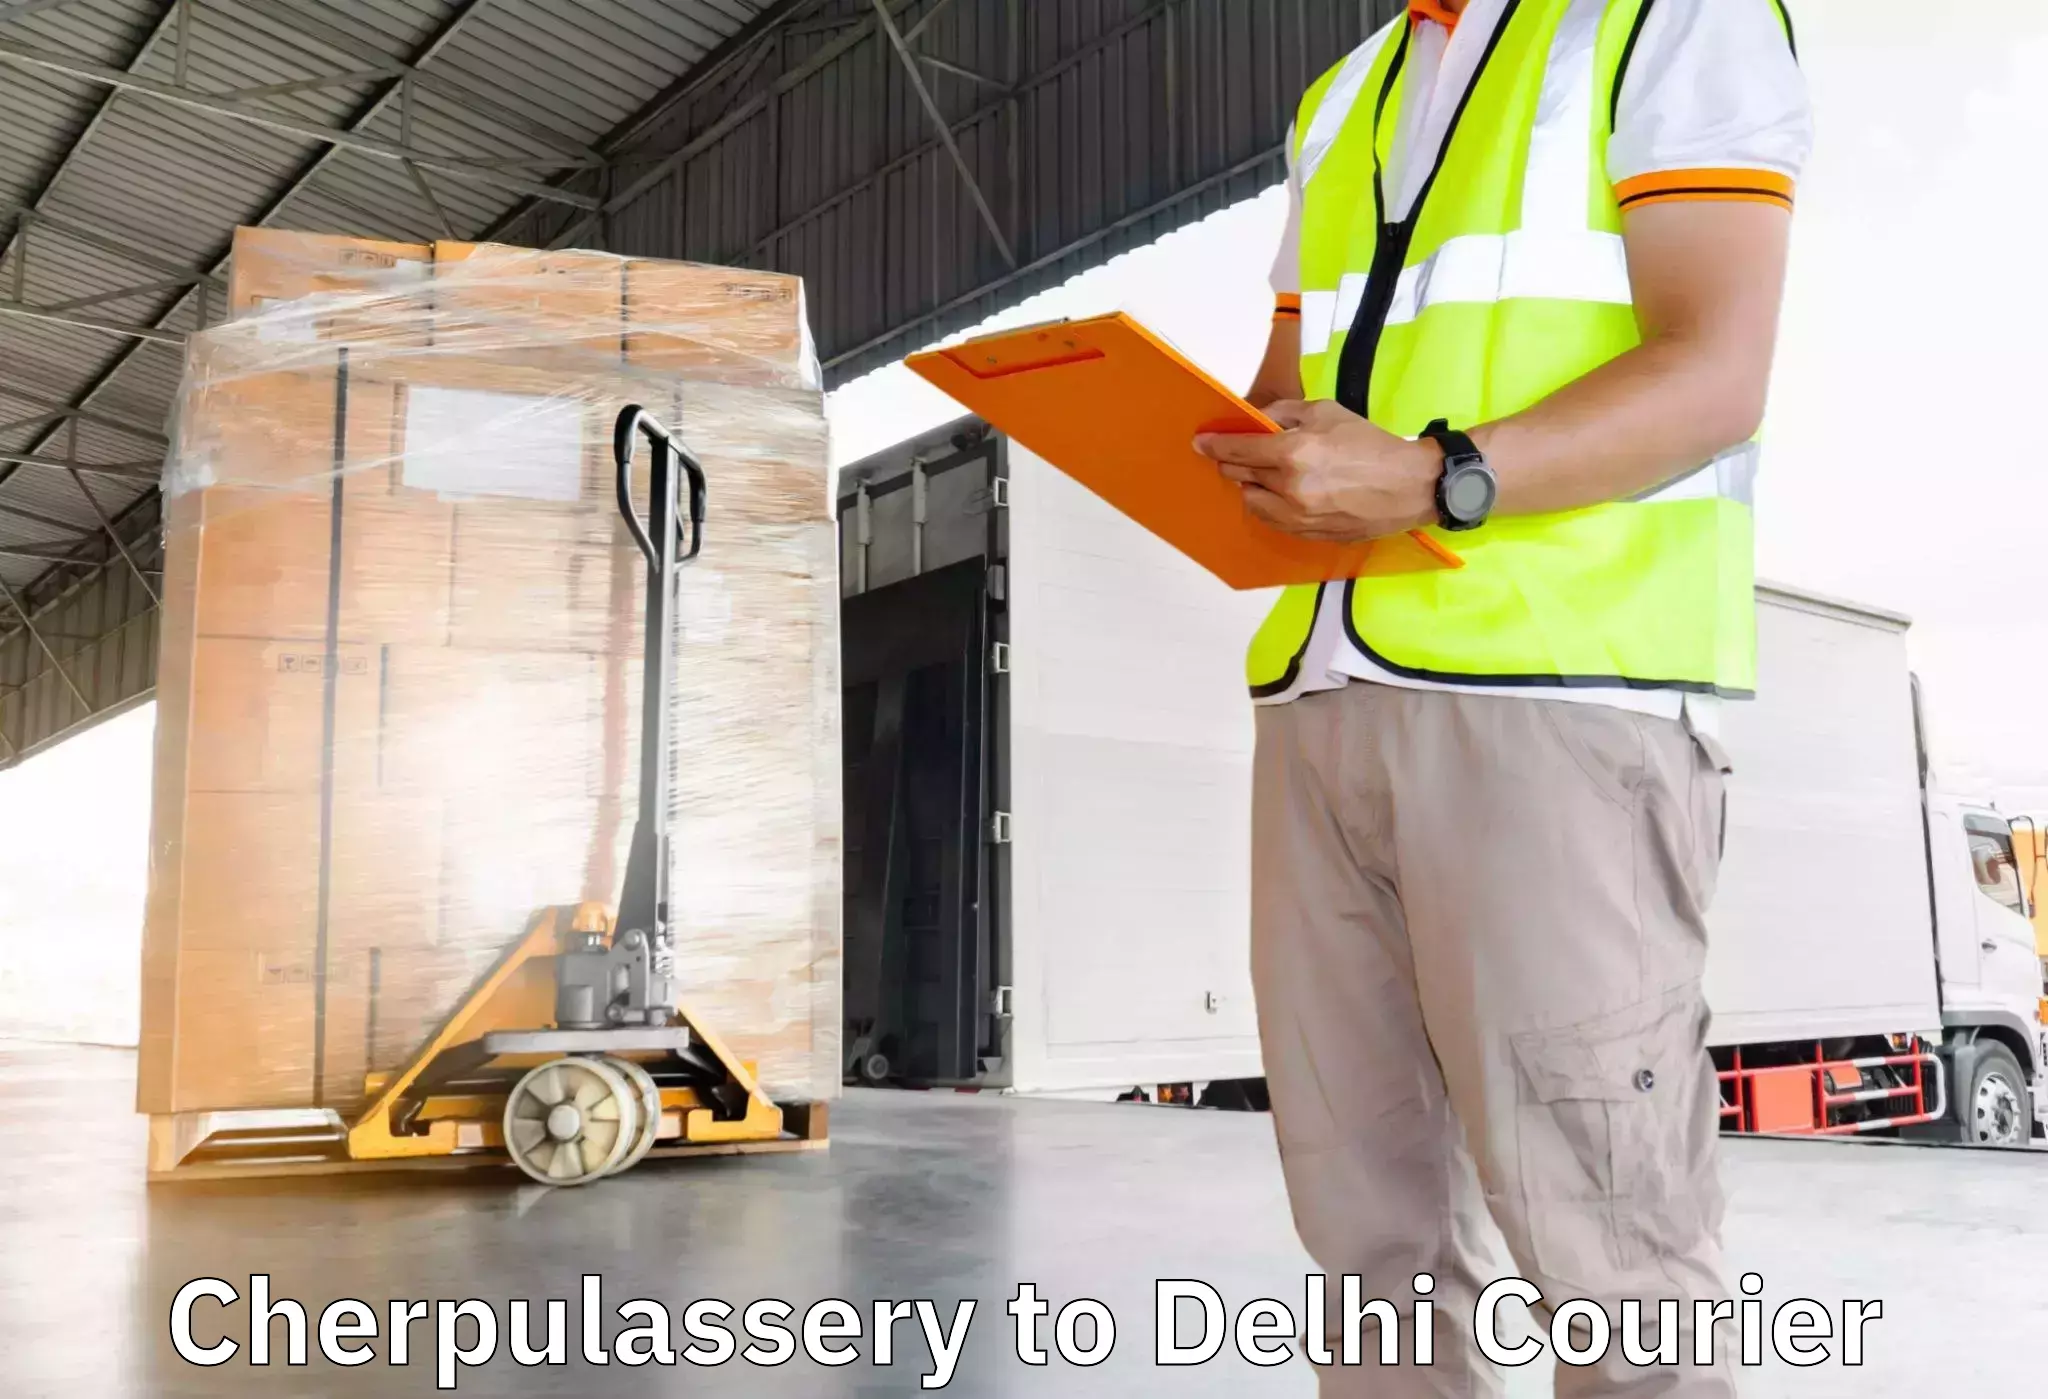 Professional packing services Cherpulassery to Jawaharlal Nehru University New Delhi